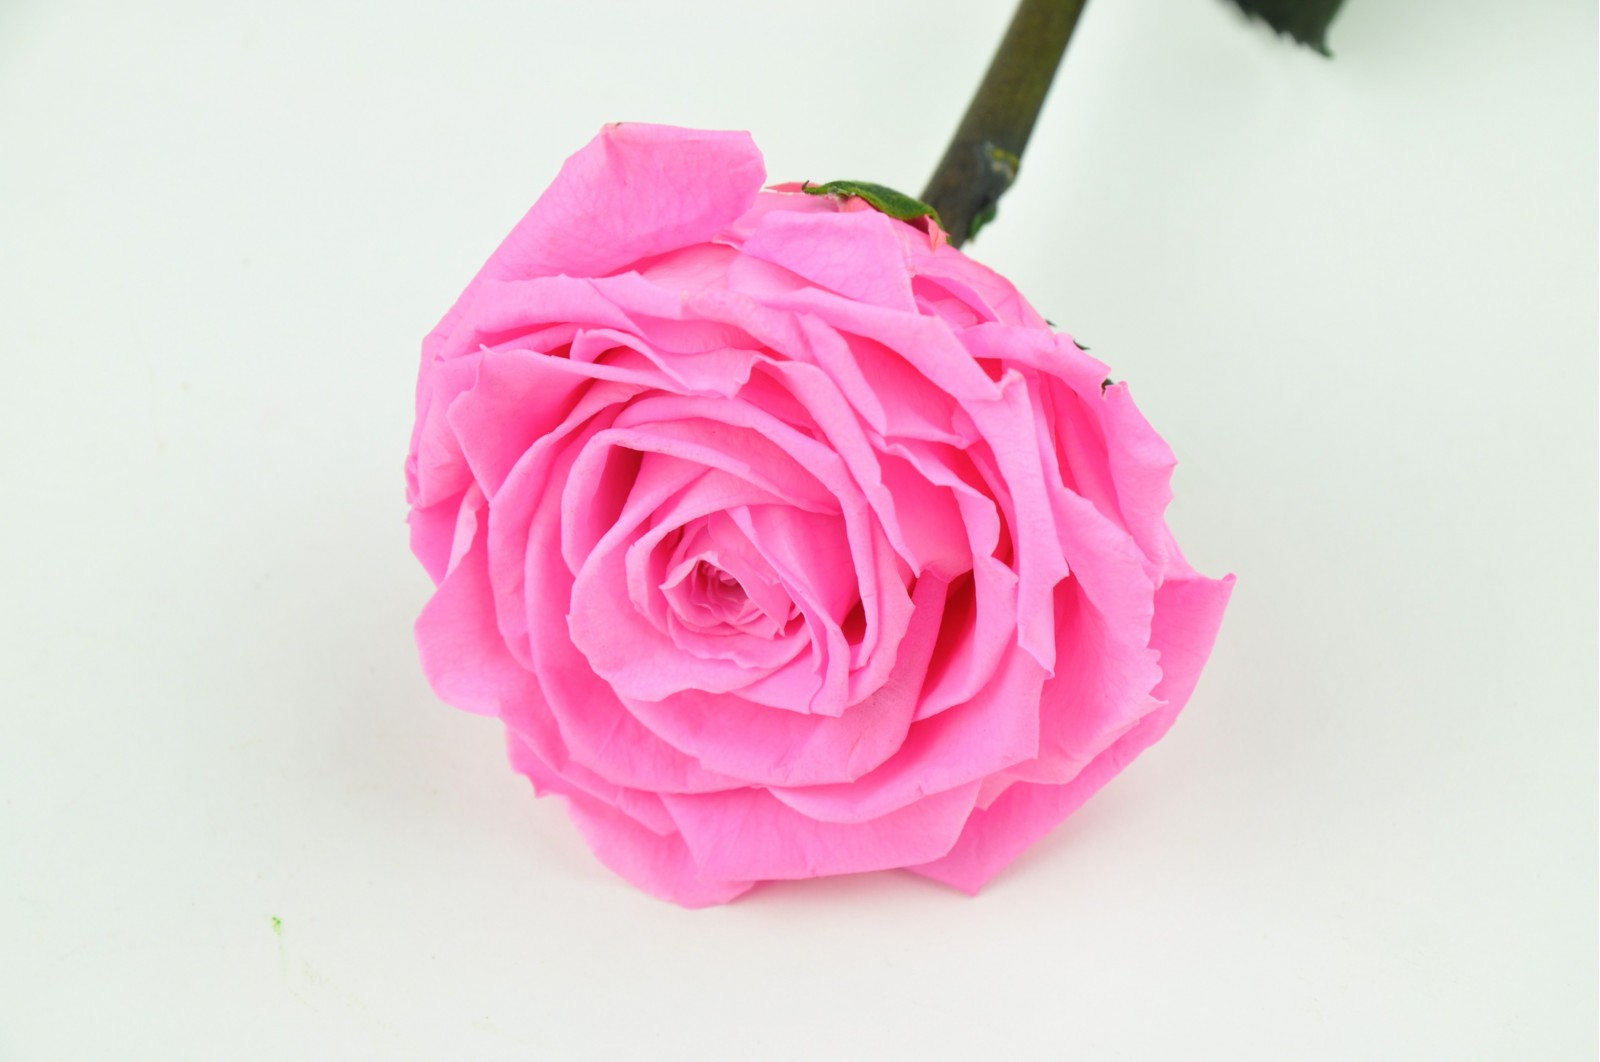 Preserved rose on stem (14)